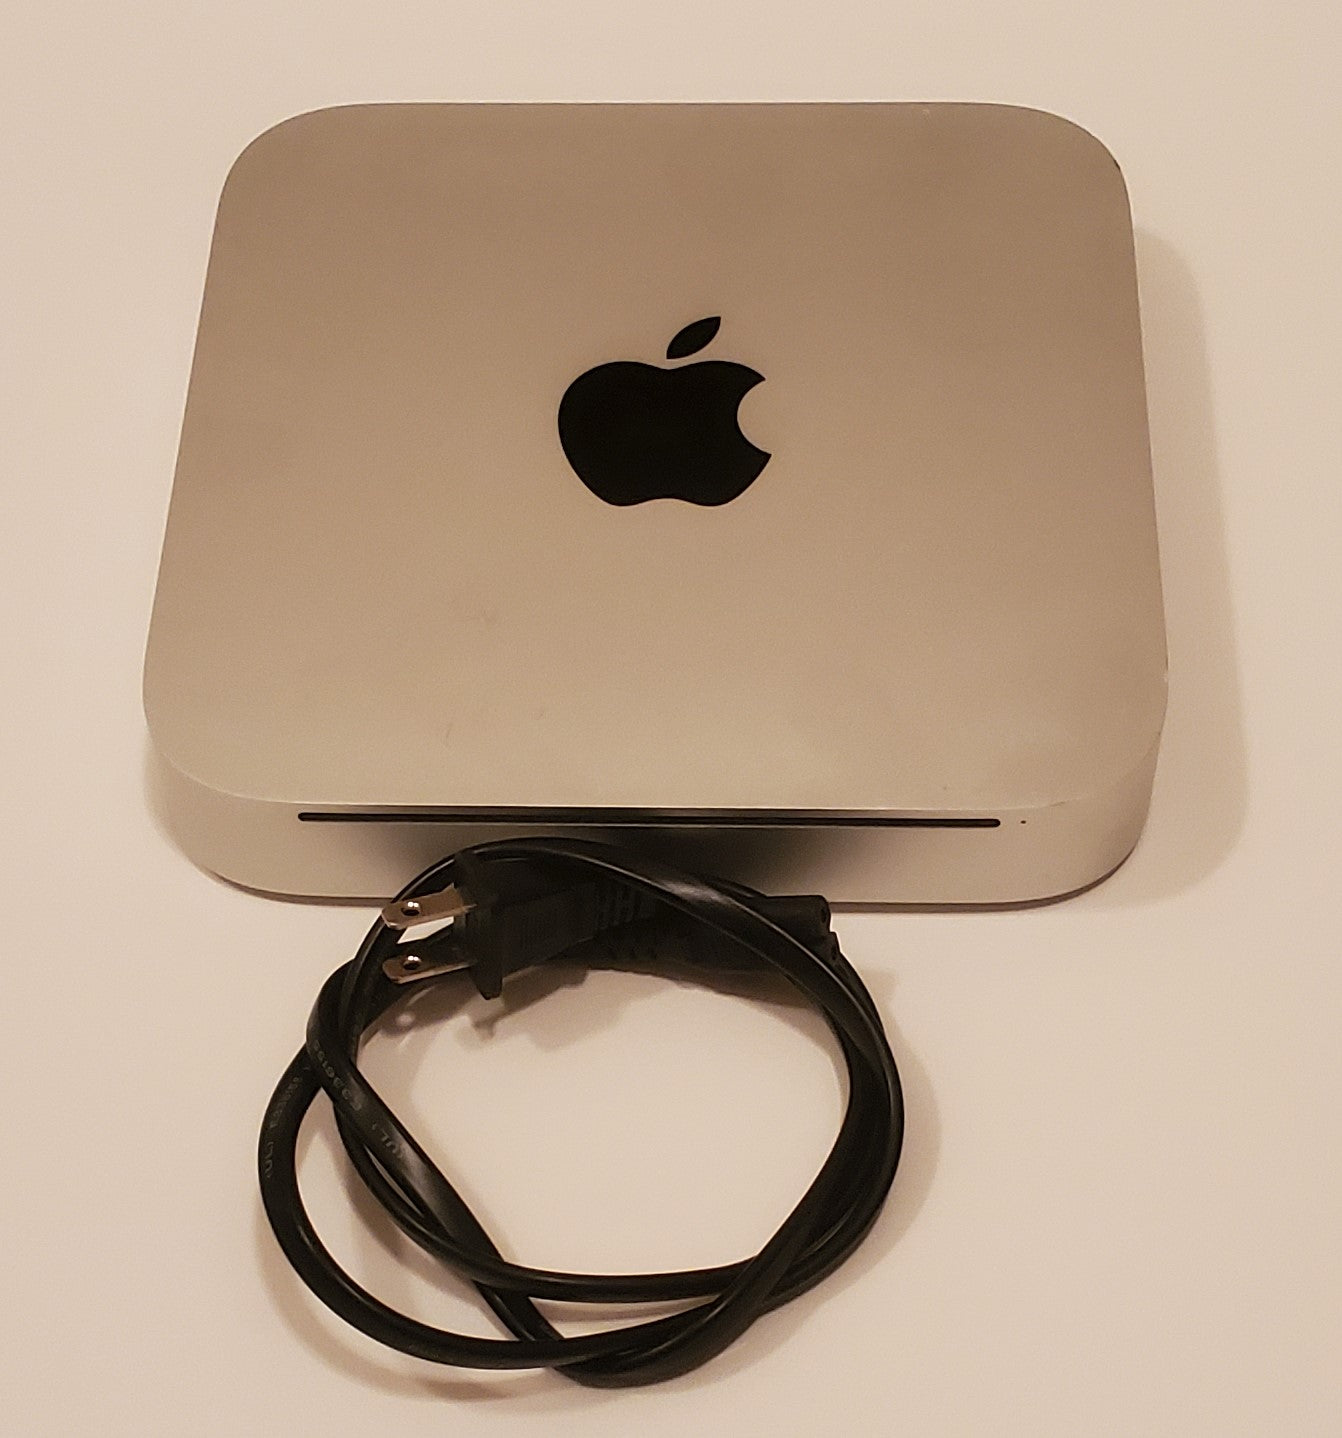 Apple Mac mini - MC270LL/A - Rekes Sales